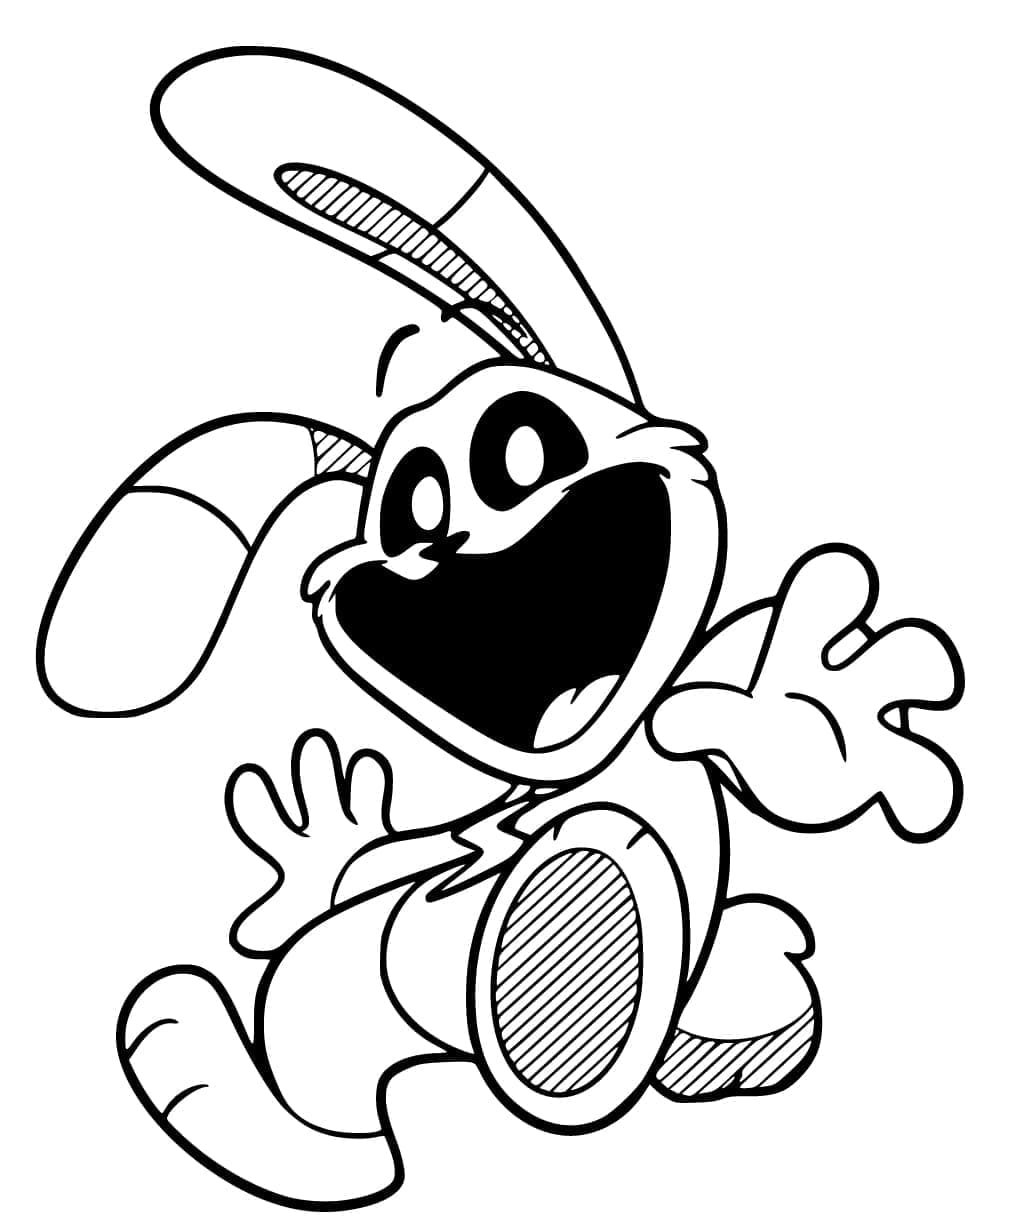 Hoppy Hopscotch de Smiling Critters coloring page